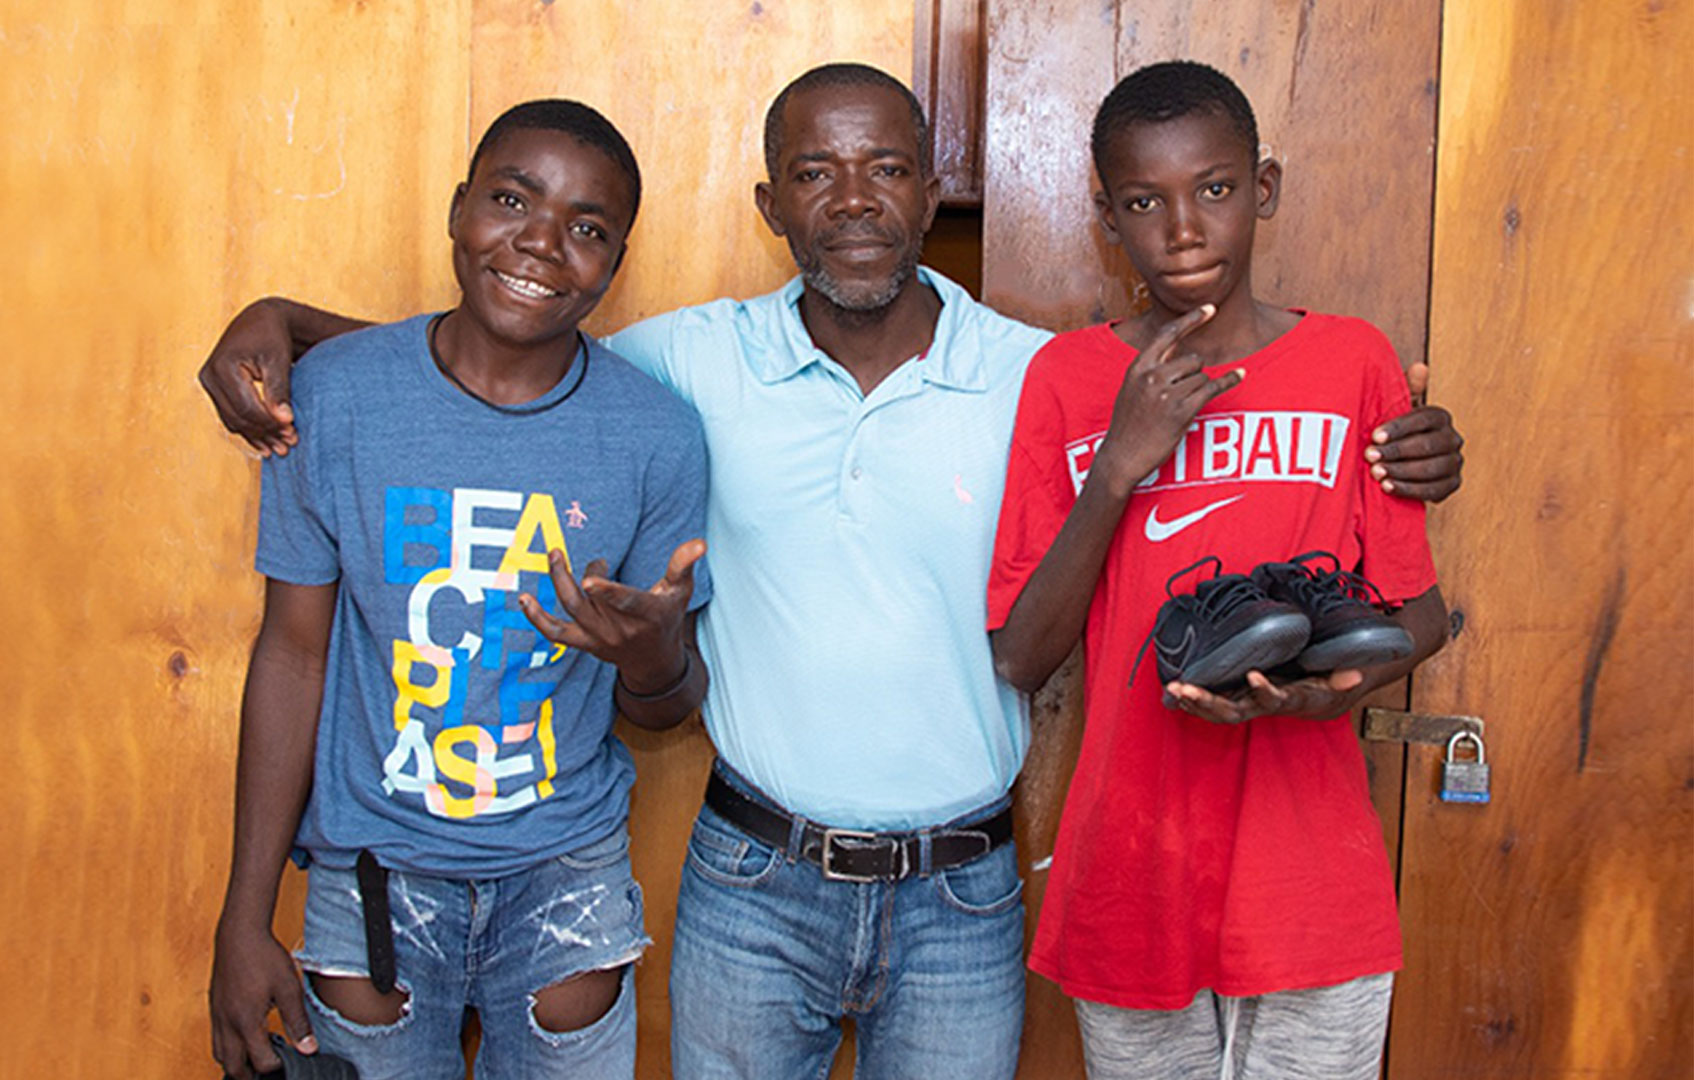 지역 사회에서 일어난 무력 충돌에서 도망친 아이티 어린이 2명이 아가페에서 환영 받다